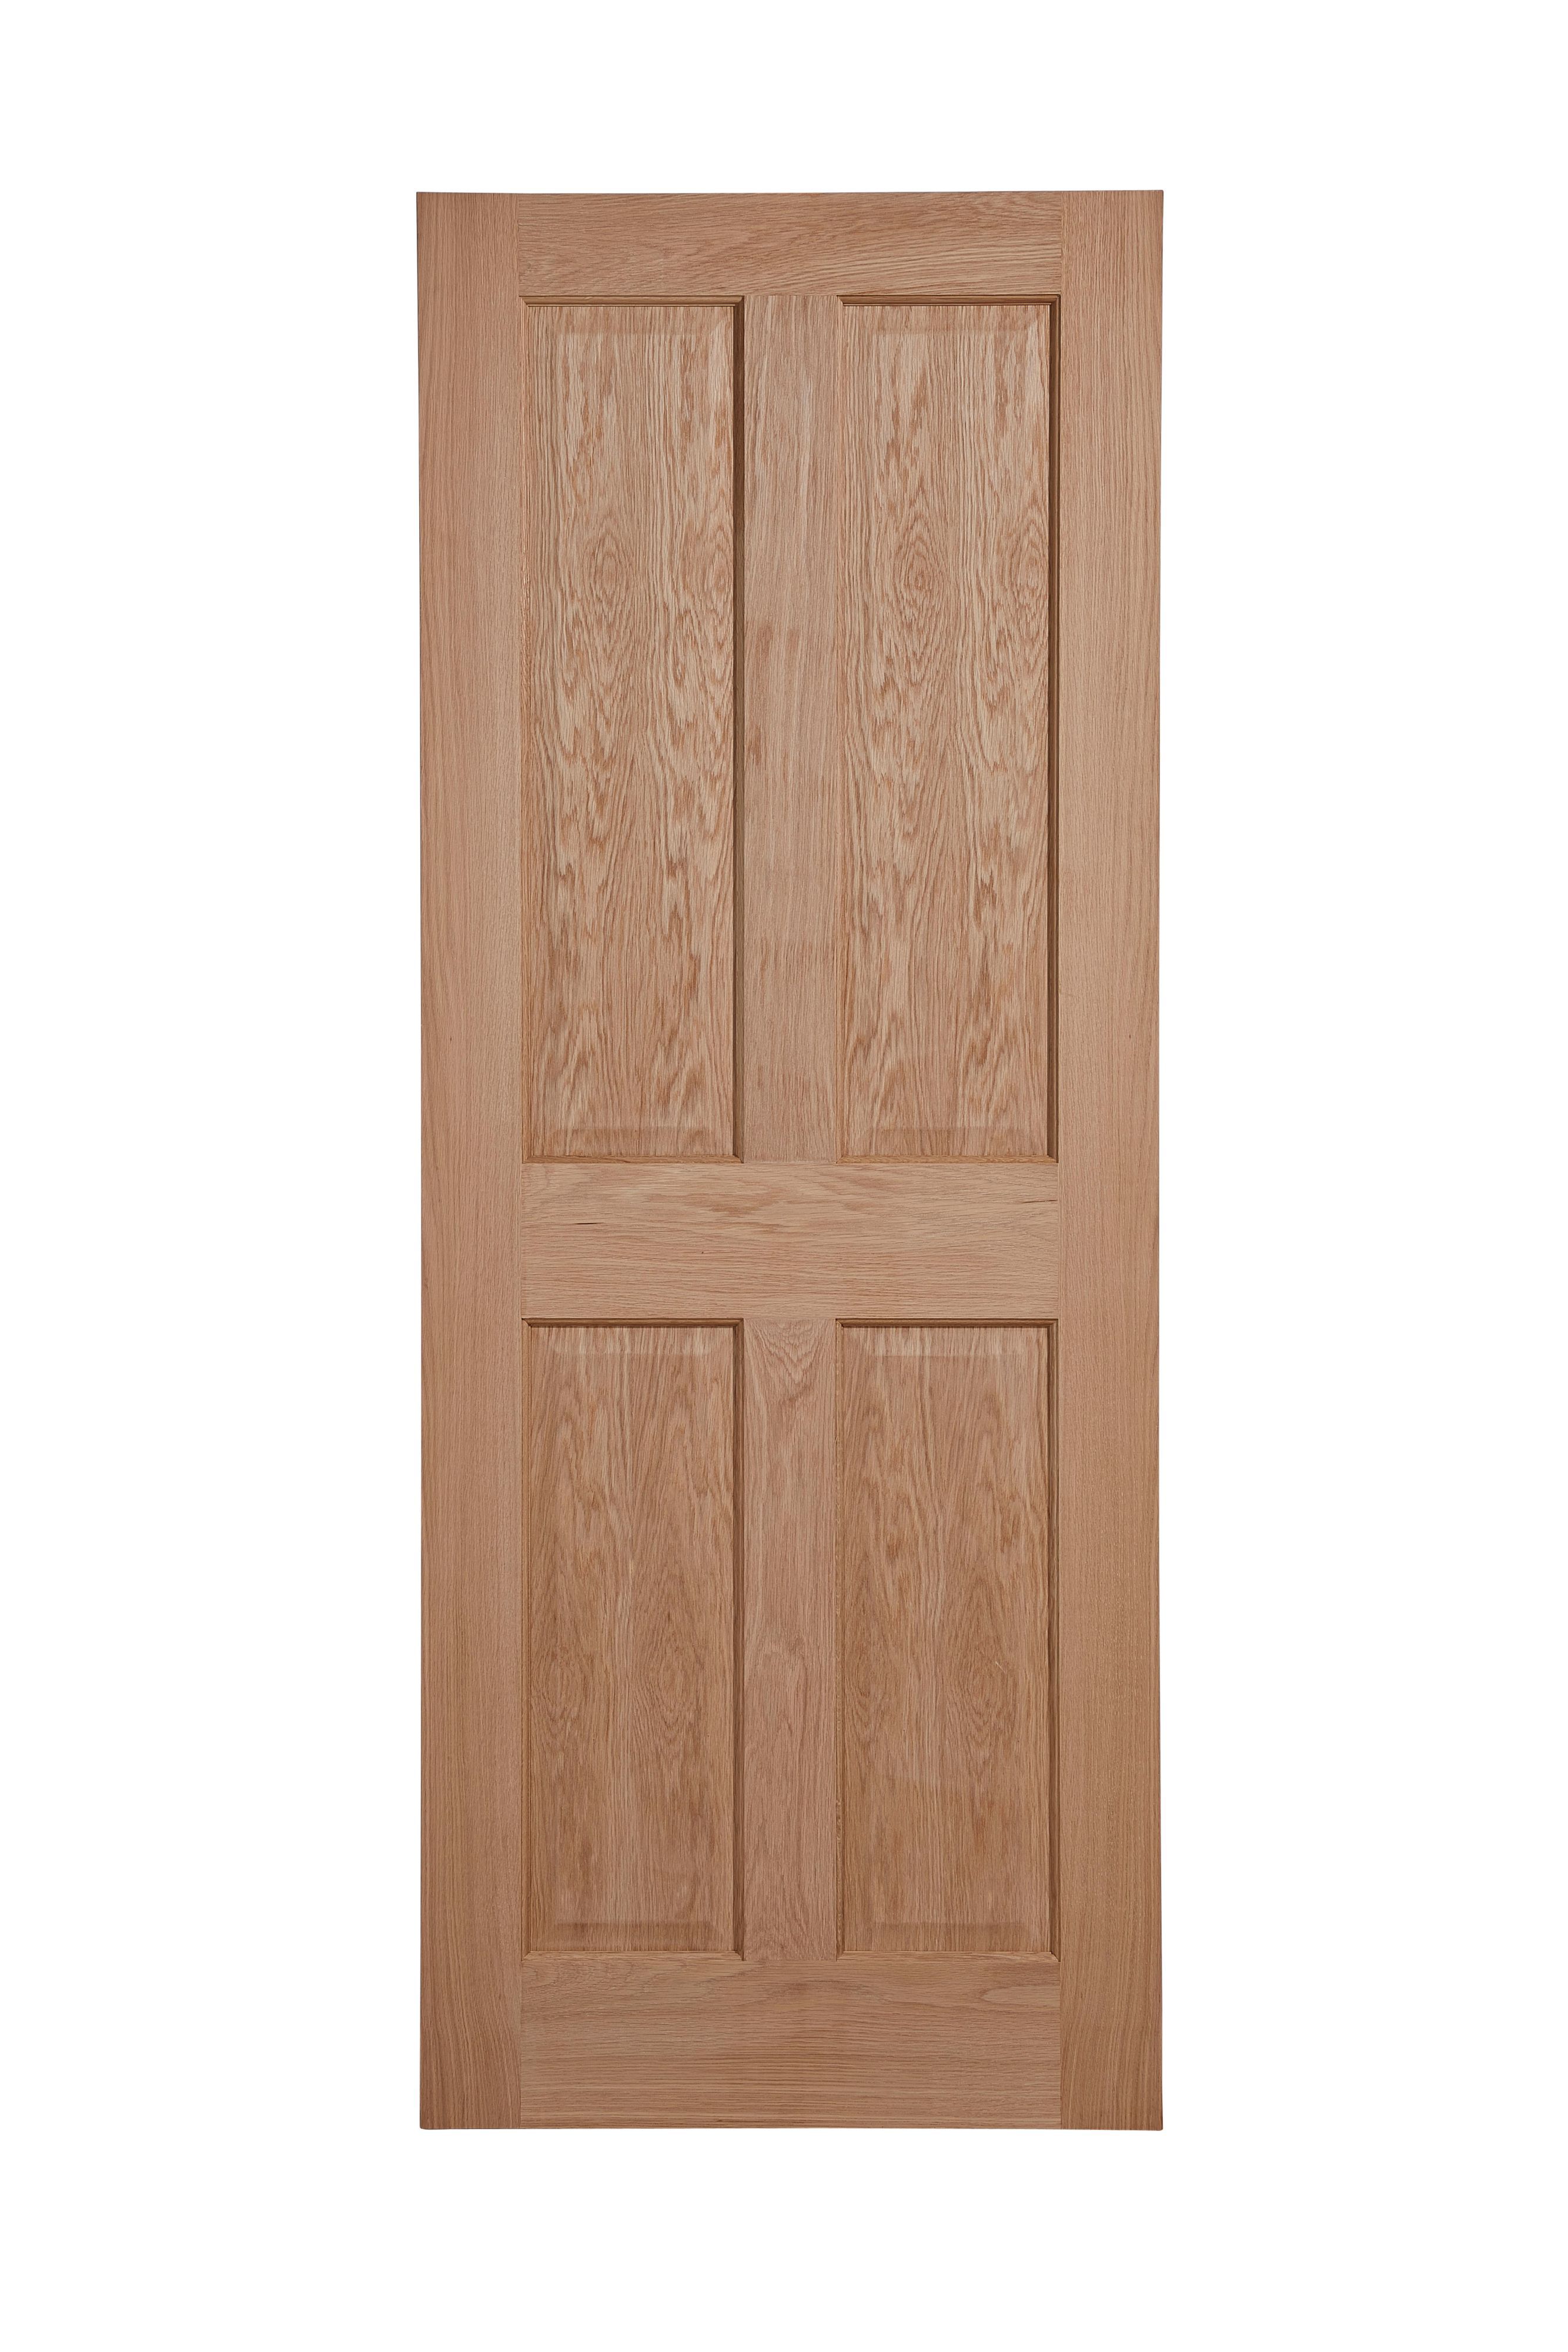 Wood grain 4 panel Unglazed Oak veneer Internal Timber Door, (H)1981mm (W)686mm (T)35mm